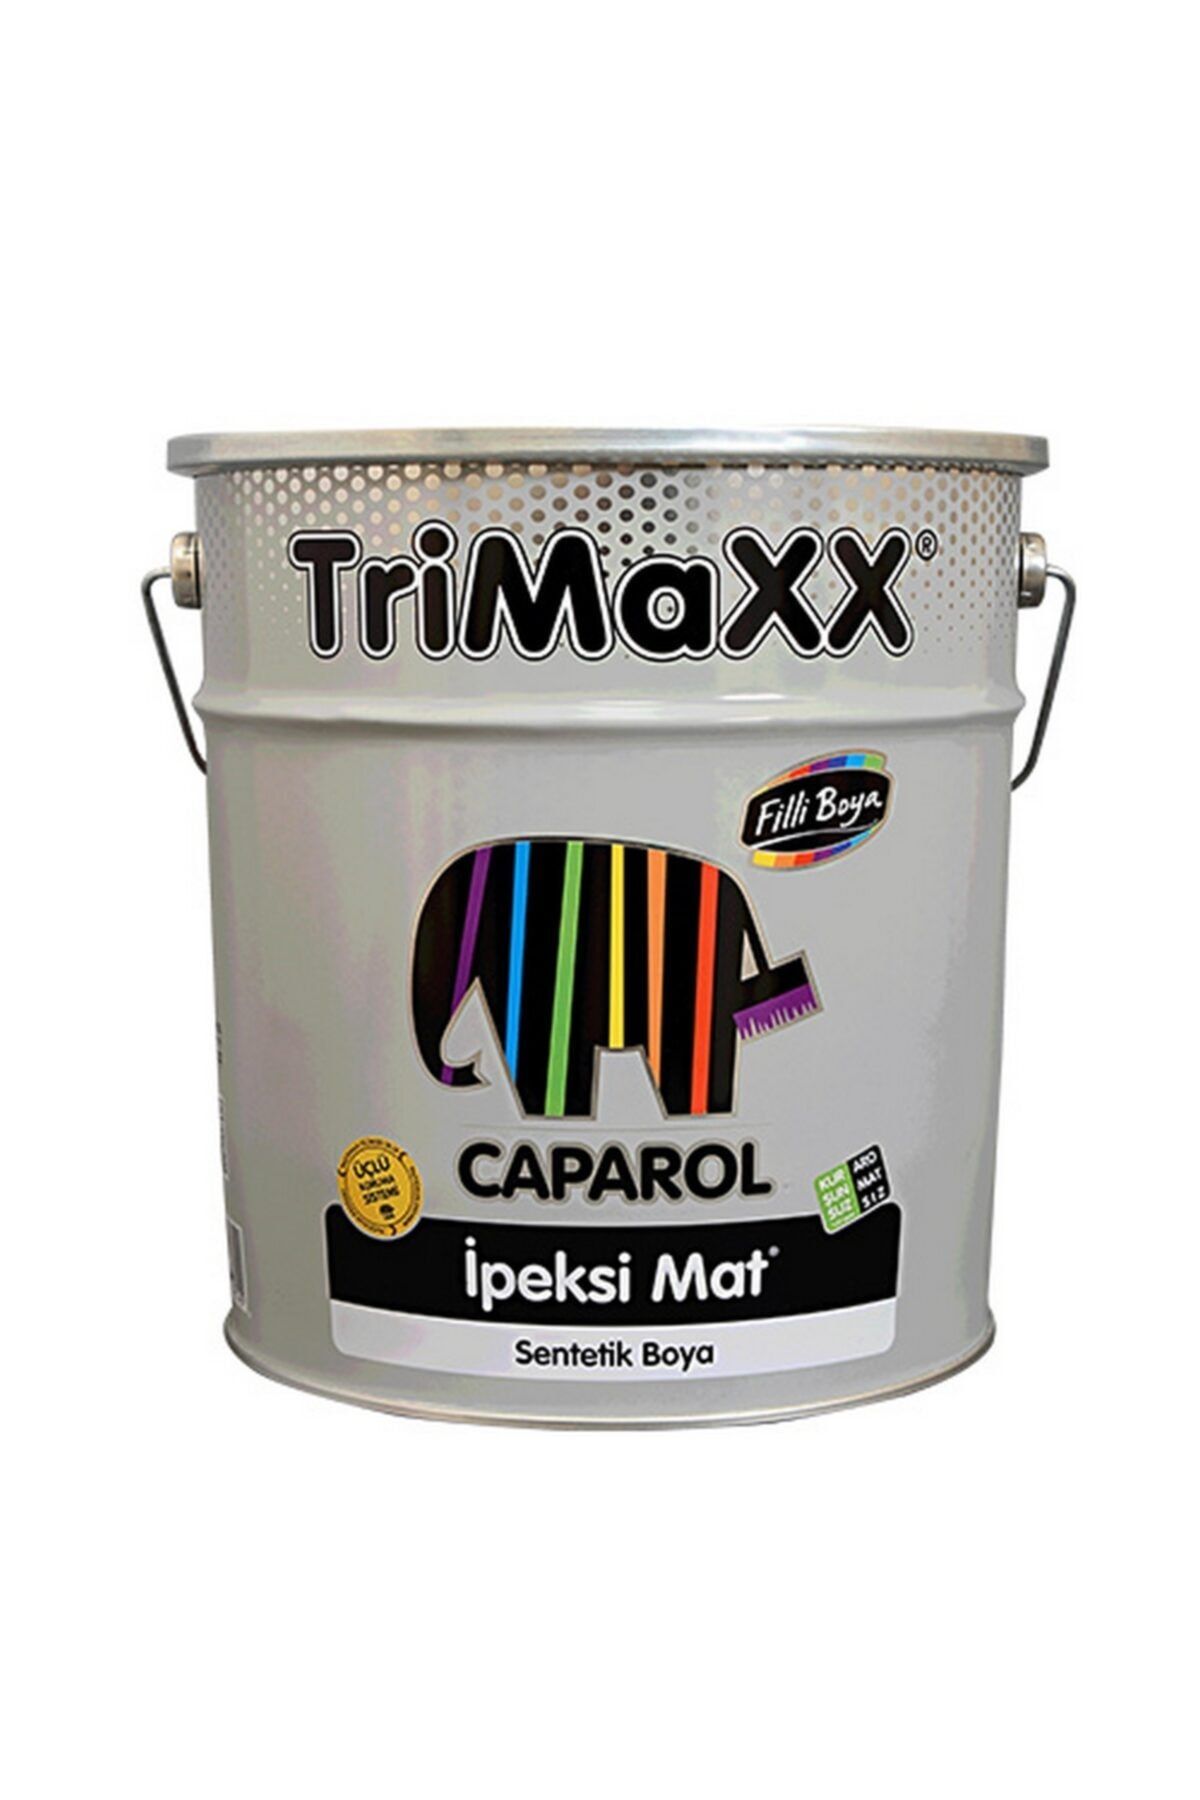 Filli Boya Trimaxx Yarımat Sentetik Ahşap Ve Metal Boyası (2,20 lt) Ral 9002 Gri Beyaz